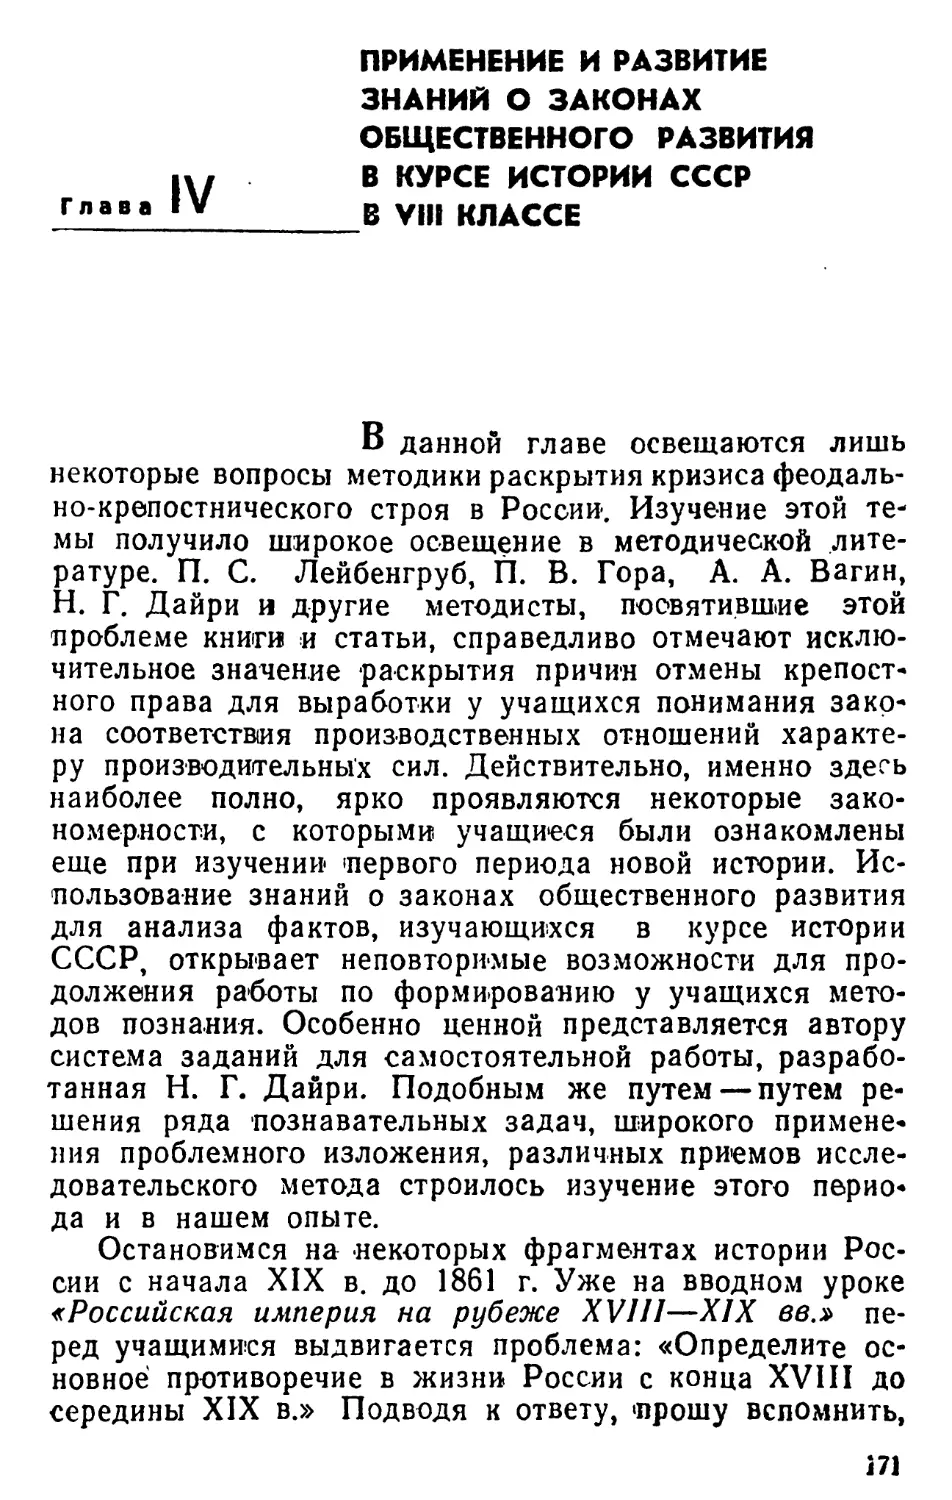 Глава IV. Применение и развитие знаний о законах общественного развития в курсе истории СССР в VIII классе